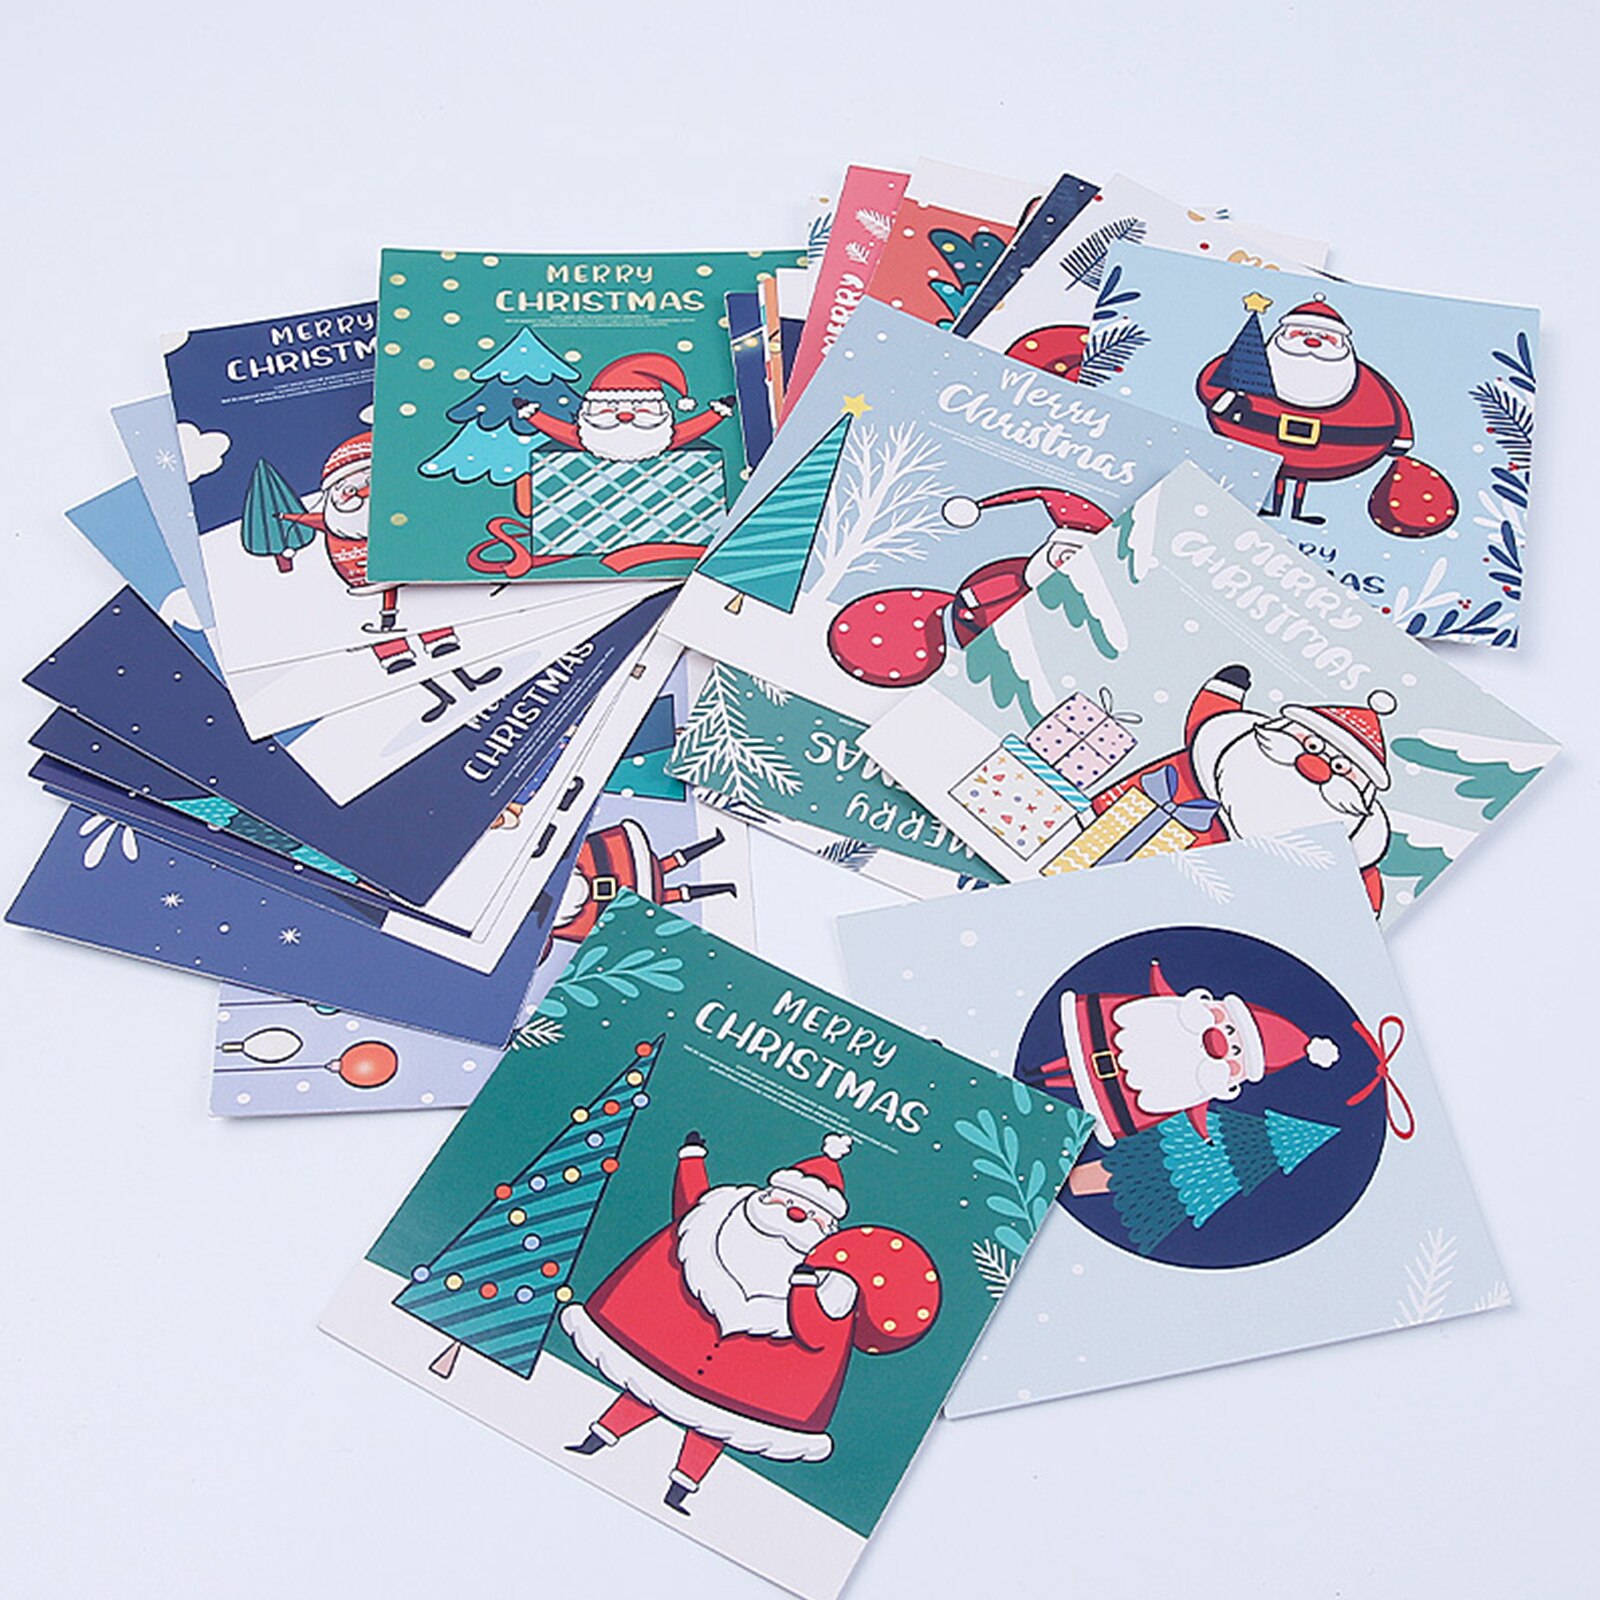 30 Stuks Wenskaart Kerst Brief Cartoon Patronen Print Handgemaakte Kaarten Diy Voor Familie Vrienden Kerst Accessoires